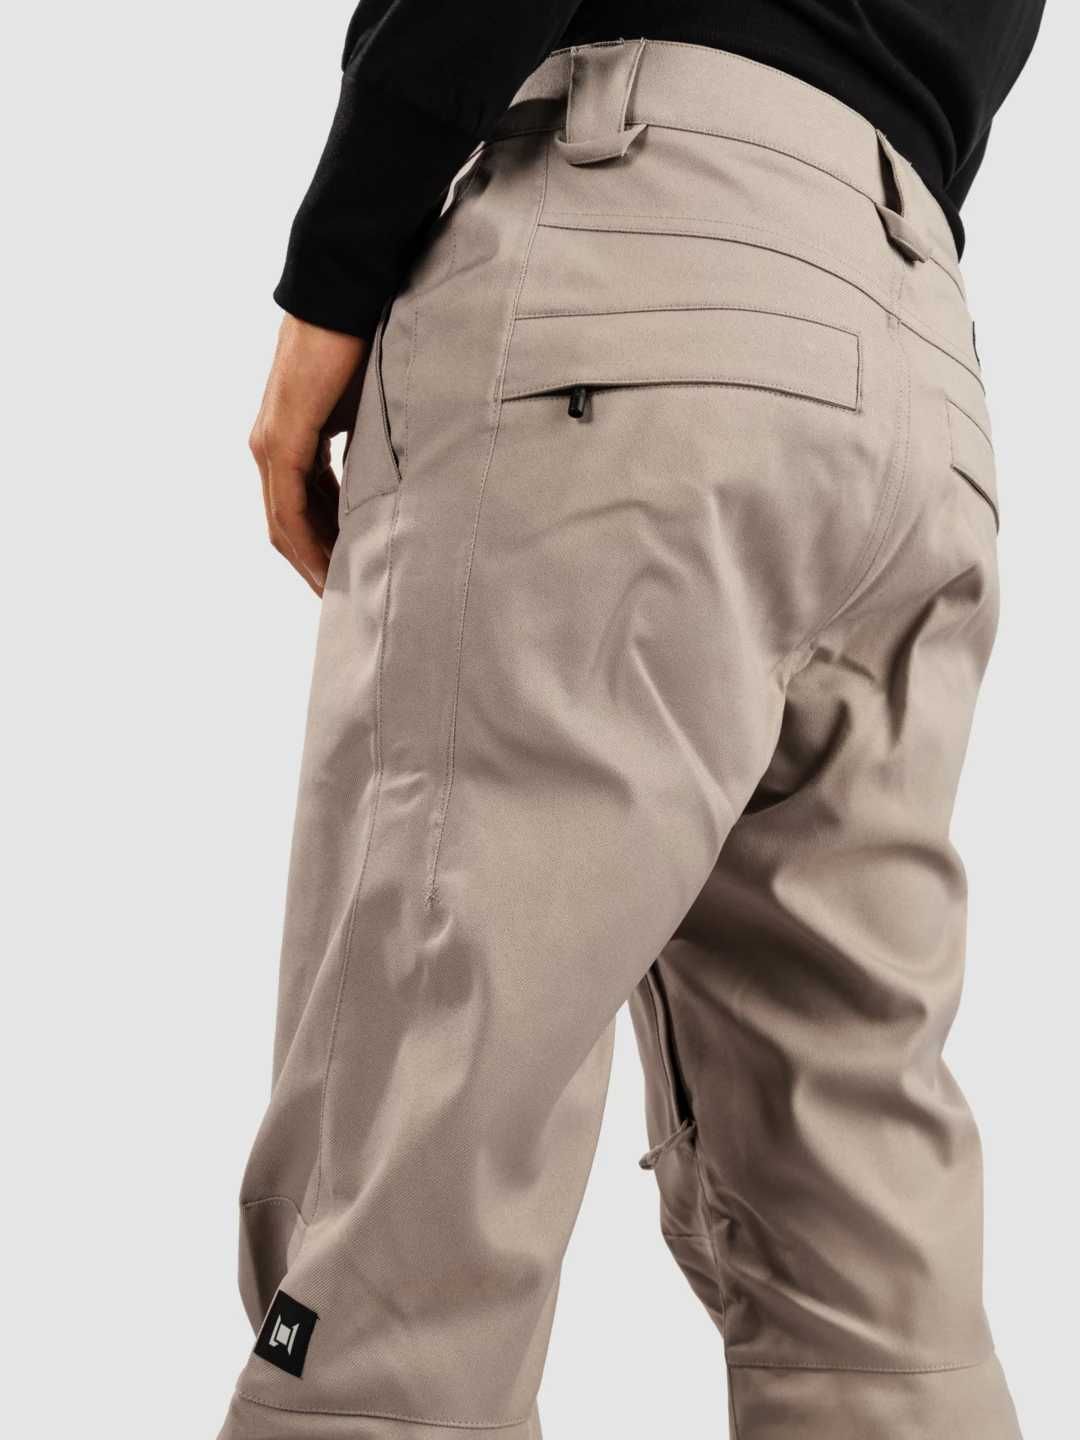 L1 Slim Chino 20k S/M/L/XL нов, оригинален мъжки ски/сноуборд панталон